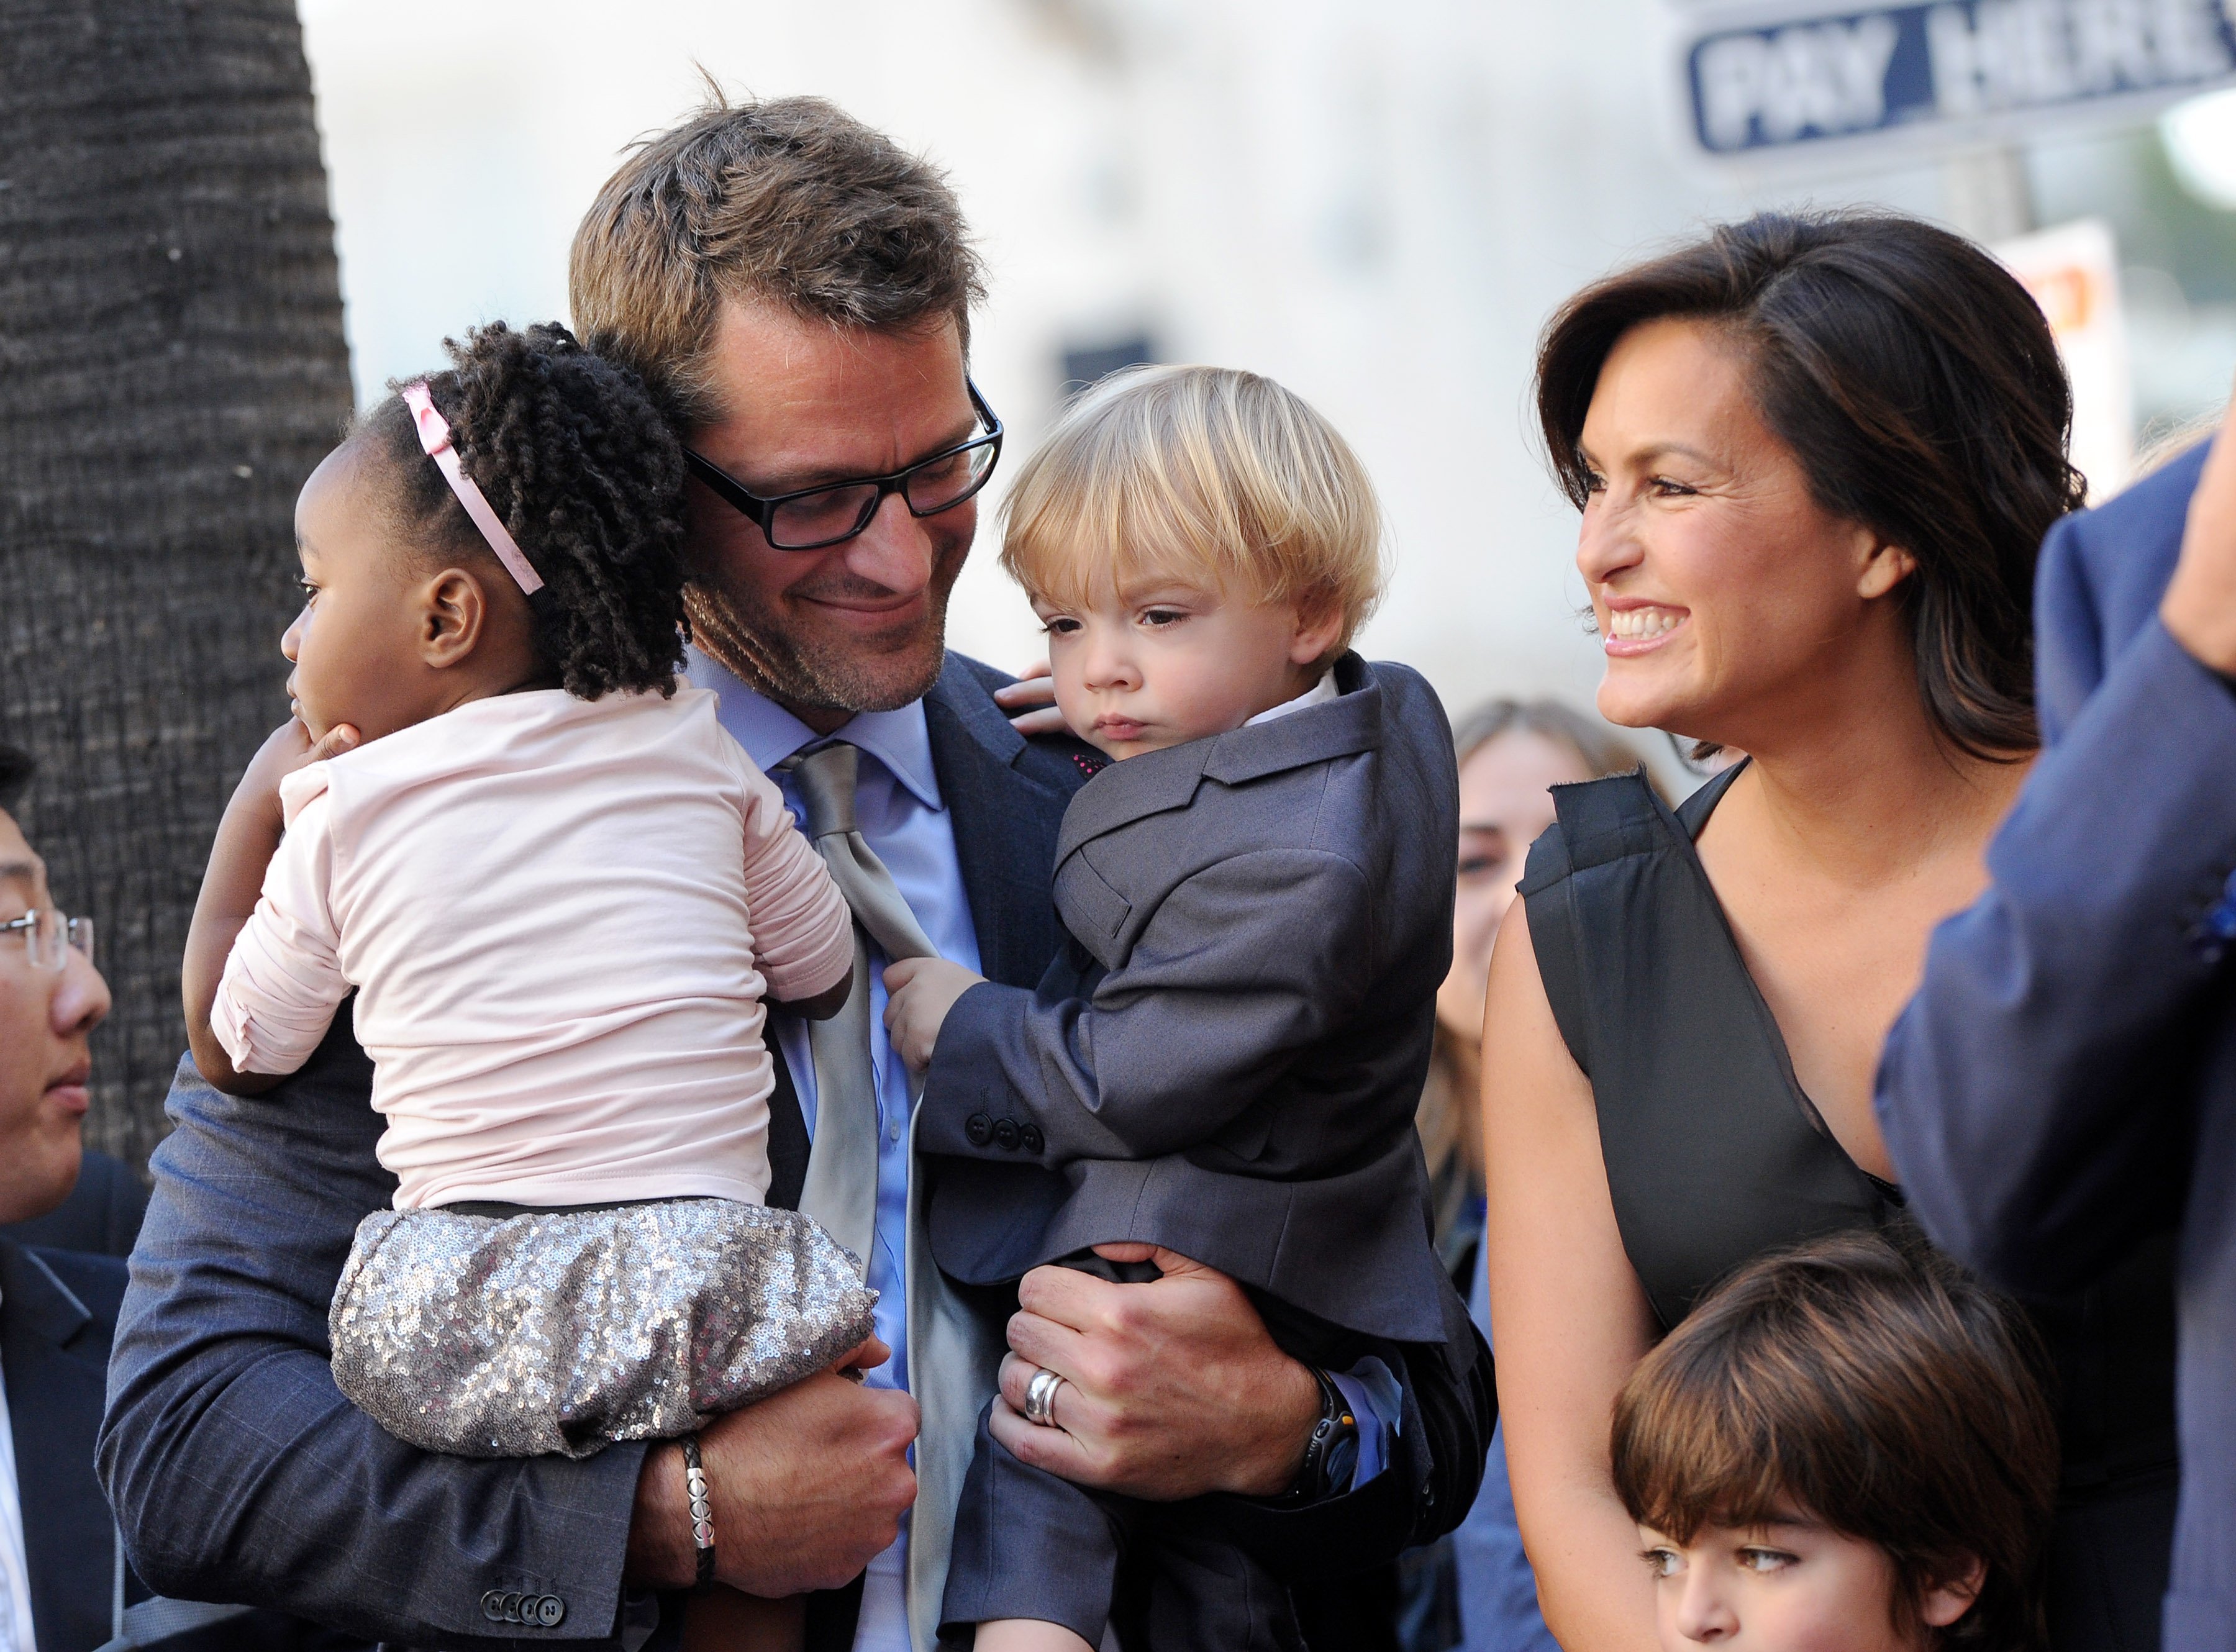 Mariska Hargitay, Peter Hermann, su hija Amaya y su hijo Andrew en el Paseo de la Fama de Hollywood el 8 de noviembre de 2013 en Hollywood, California | Foto: Getty Images